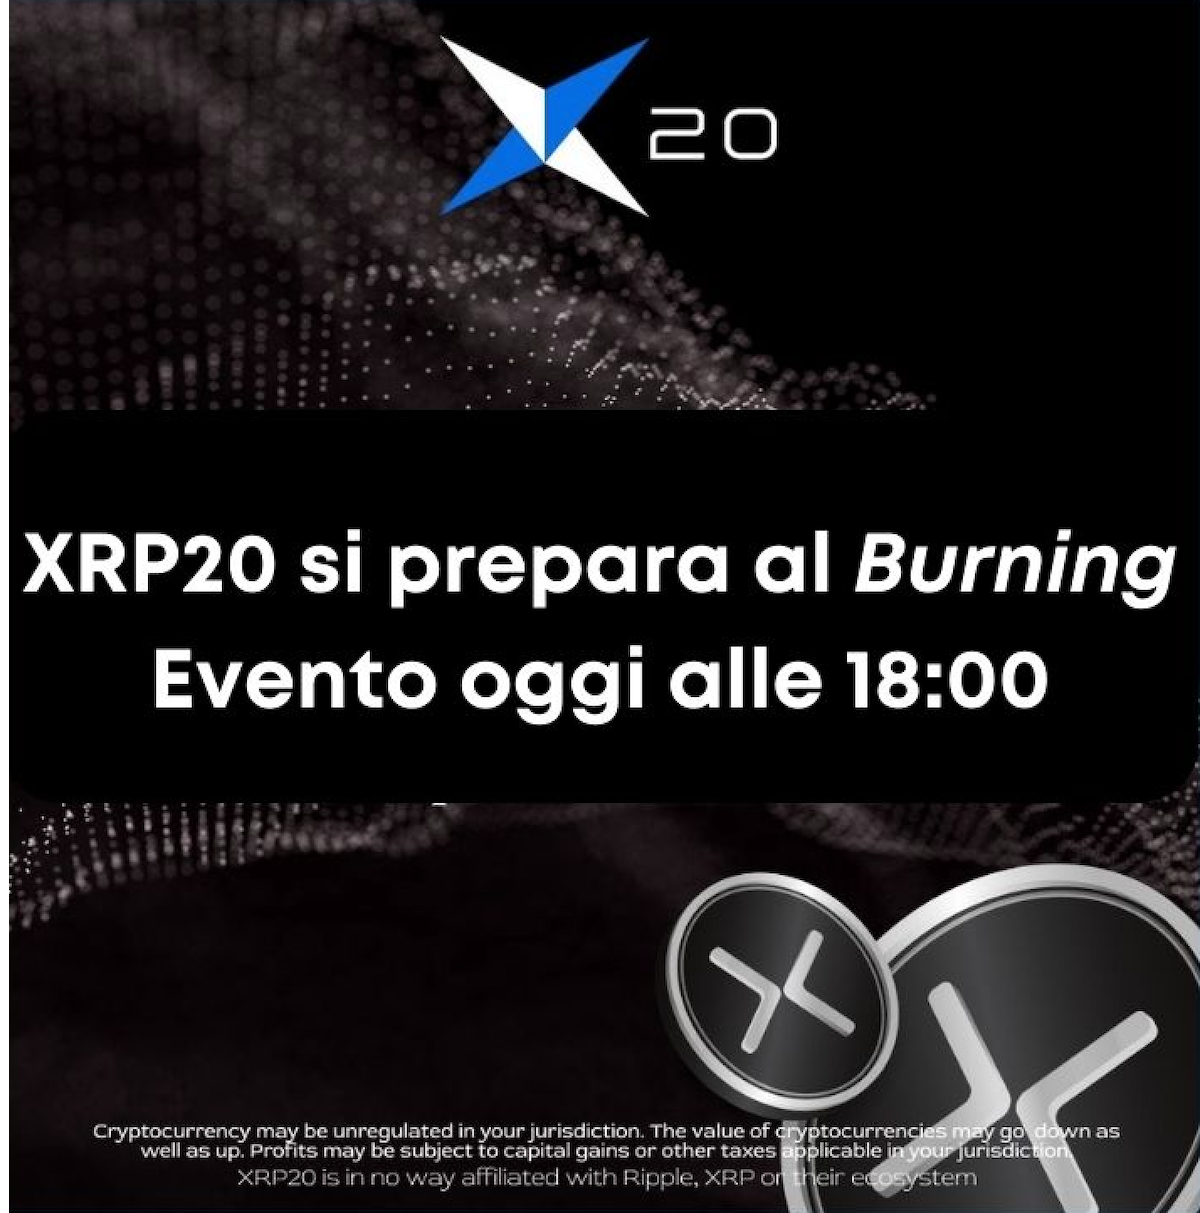 XRP 20 burning